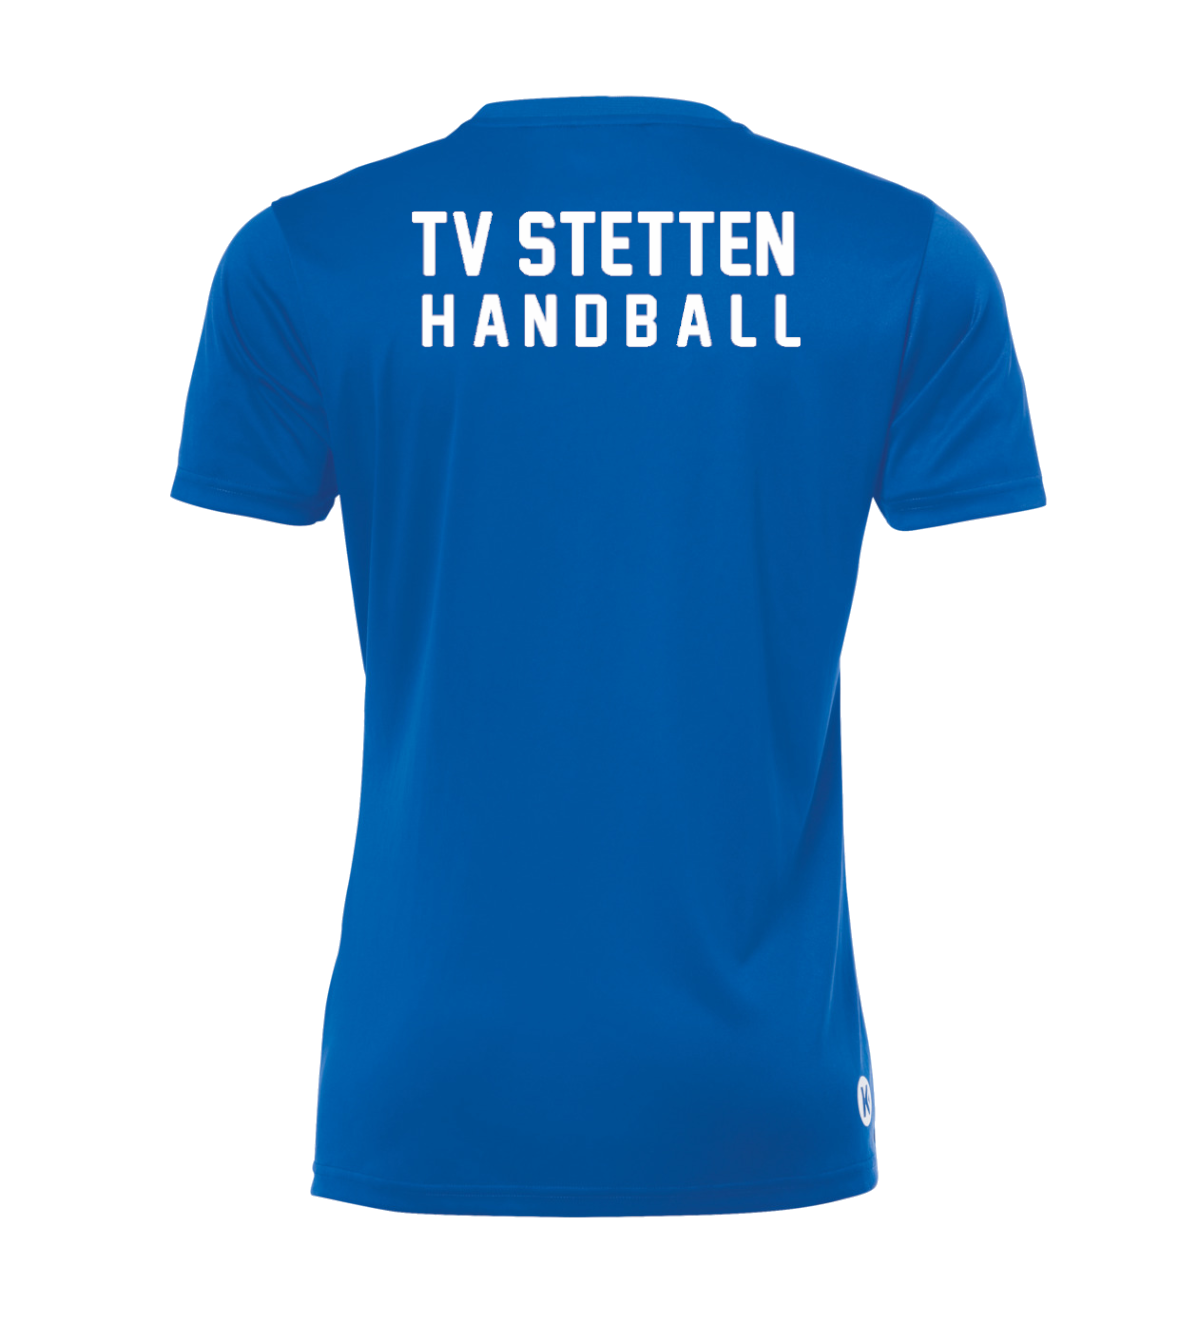 Poly shirt Herren TV Stetten Handball